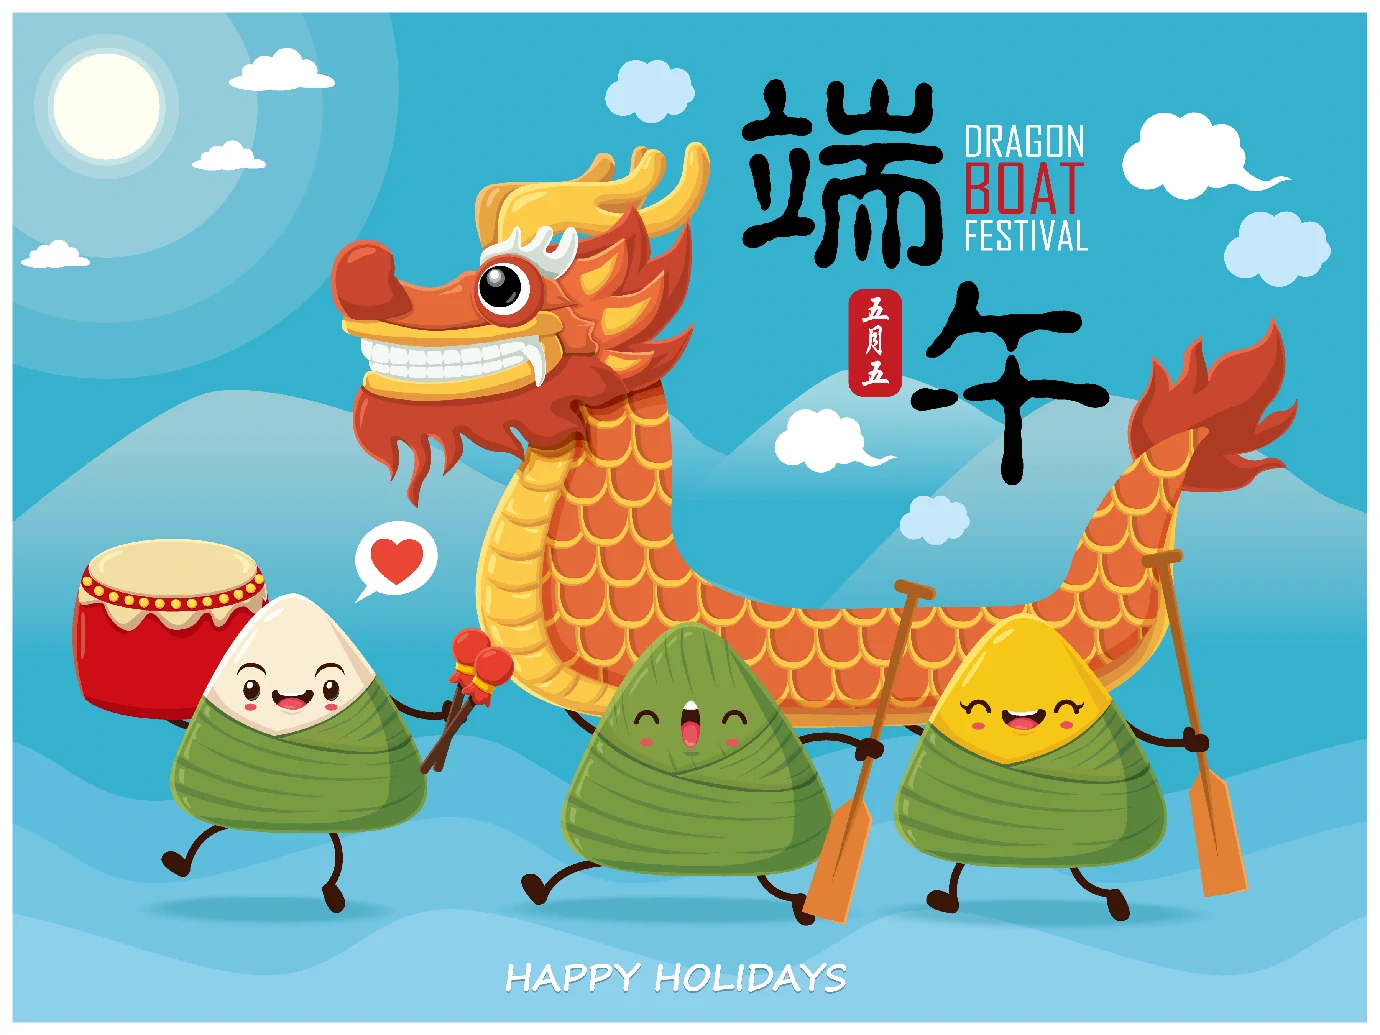 中国传统节日卡通手绘端午节赛龙舟粽子插画海报AI矢量设计素材【018】